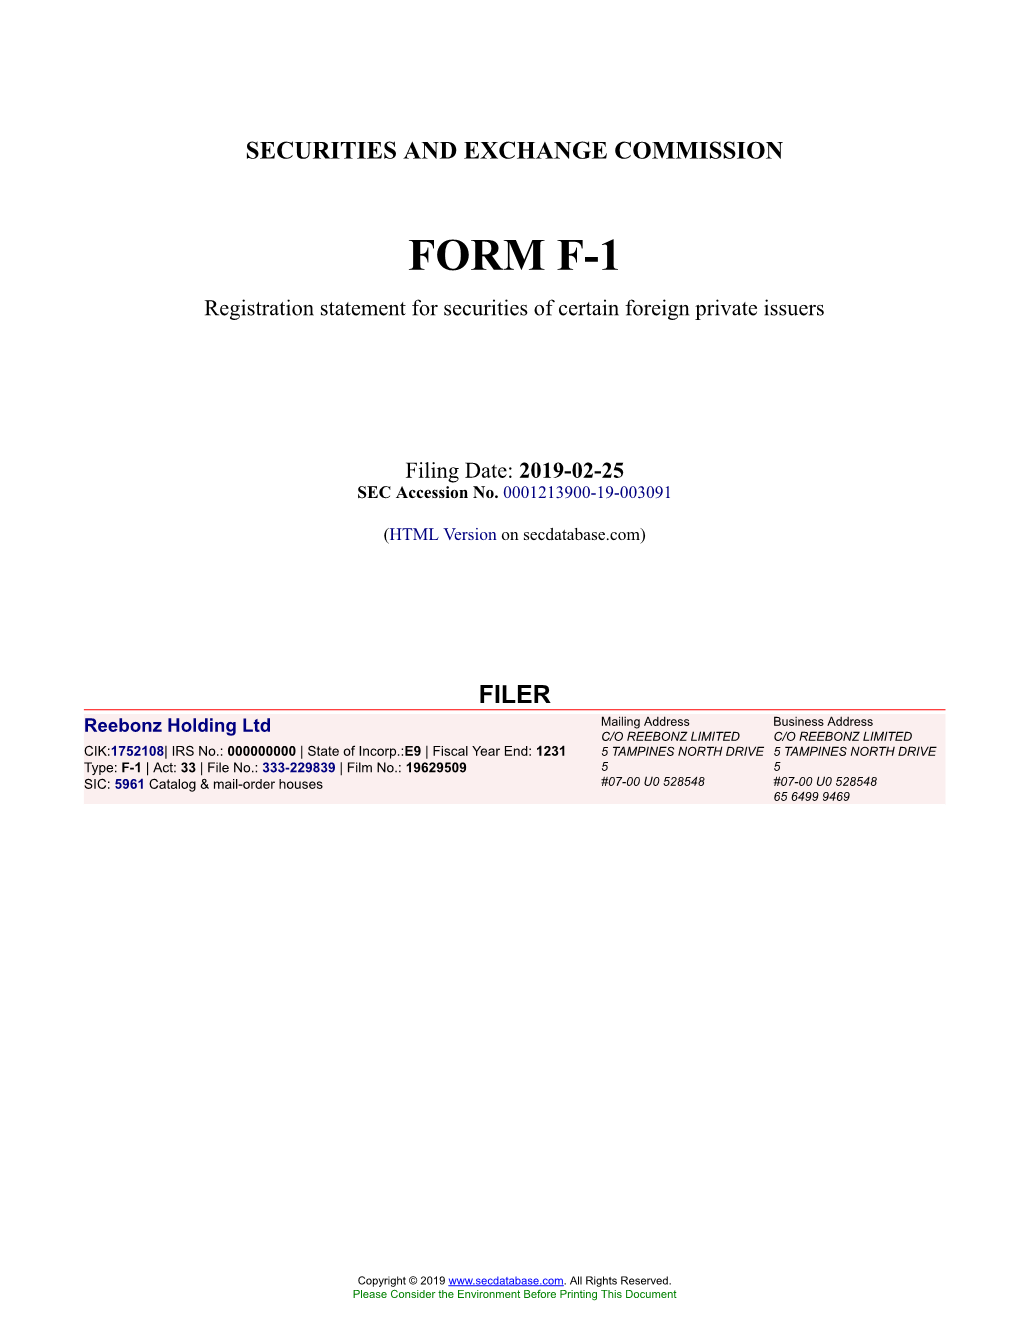 Reebonz Holding Ltd Form F-1 Filed 2019-02-25